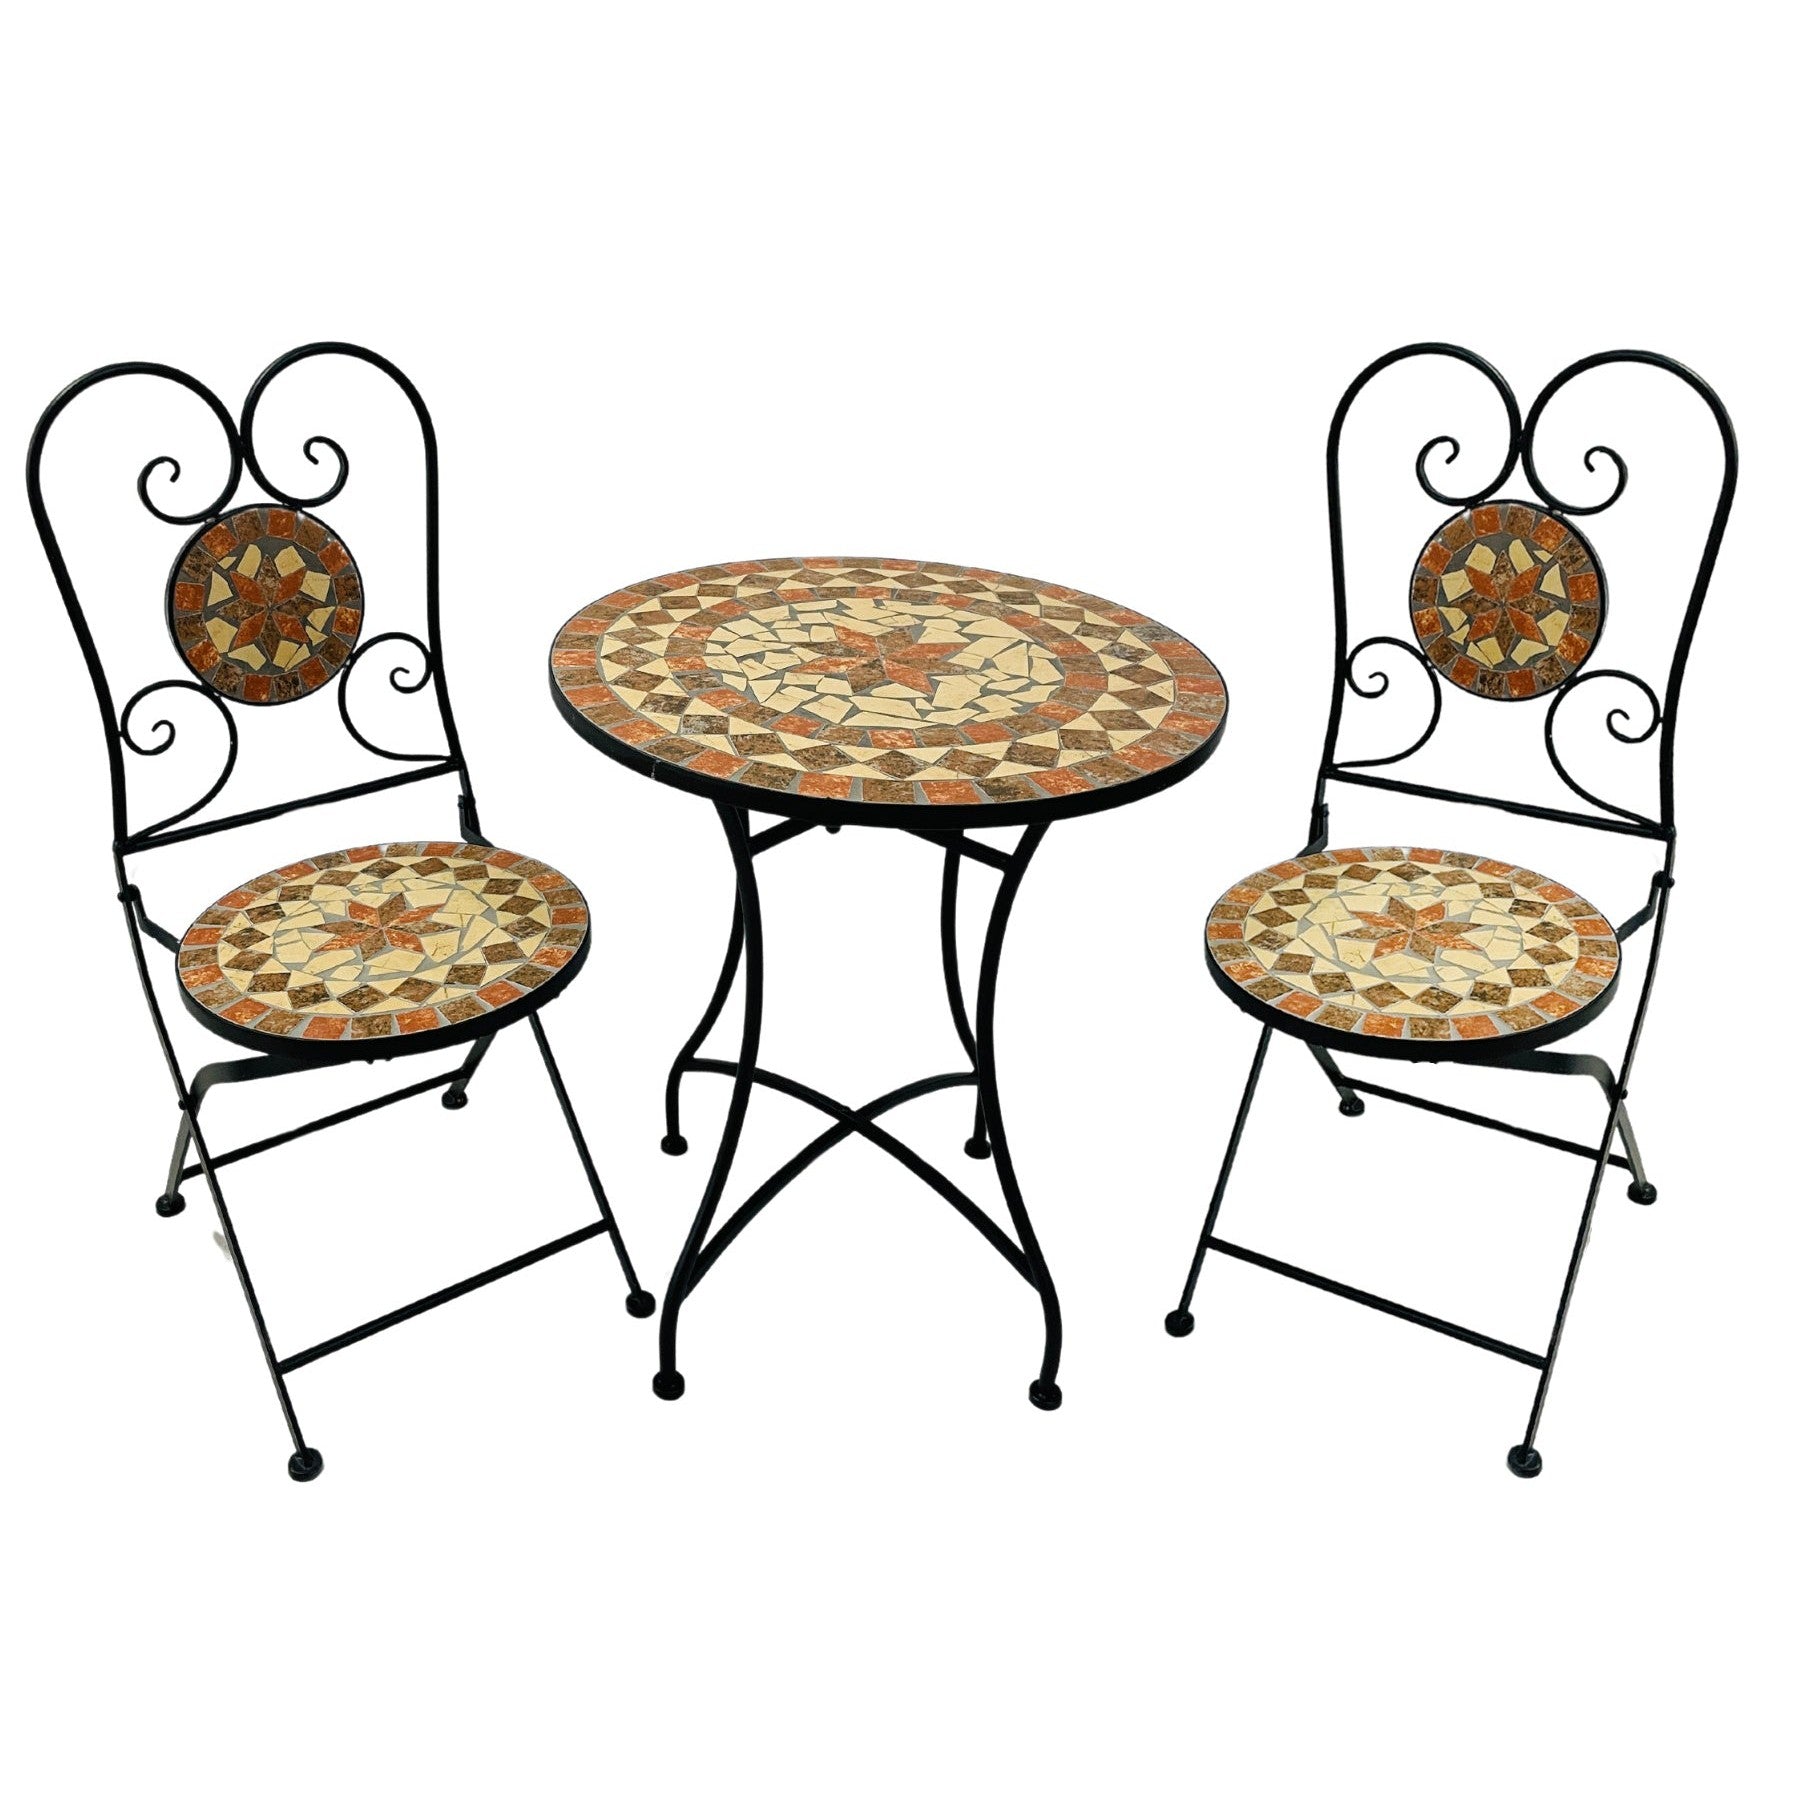 Mosaik-Bistroset "Caspian" bestehend aus 2 Stühlen und 1 Tisch